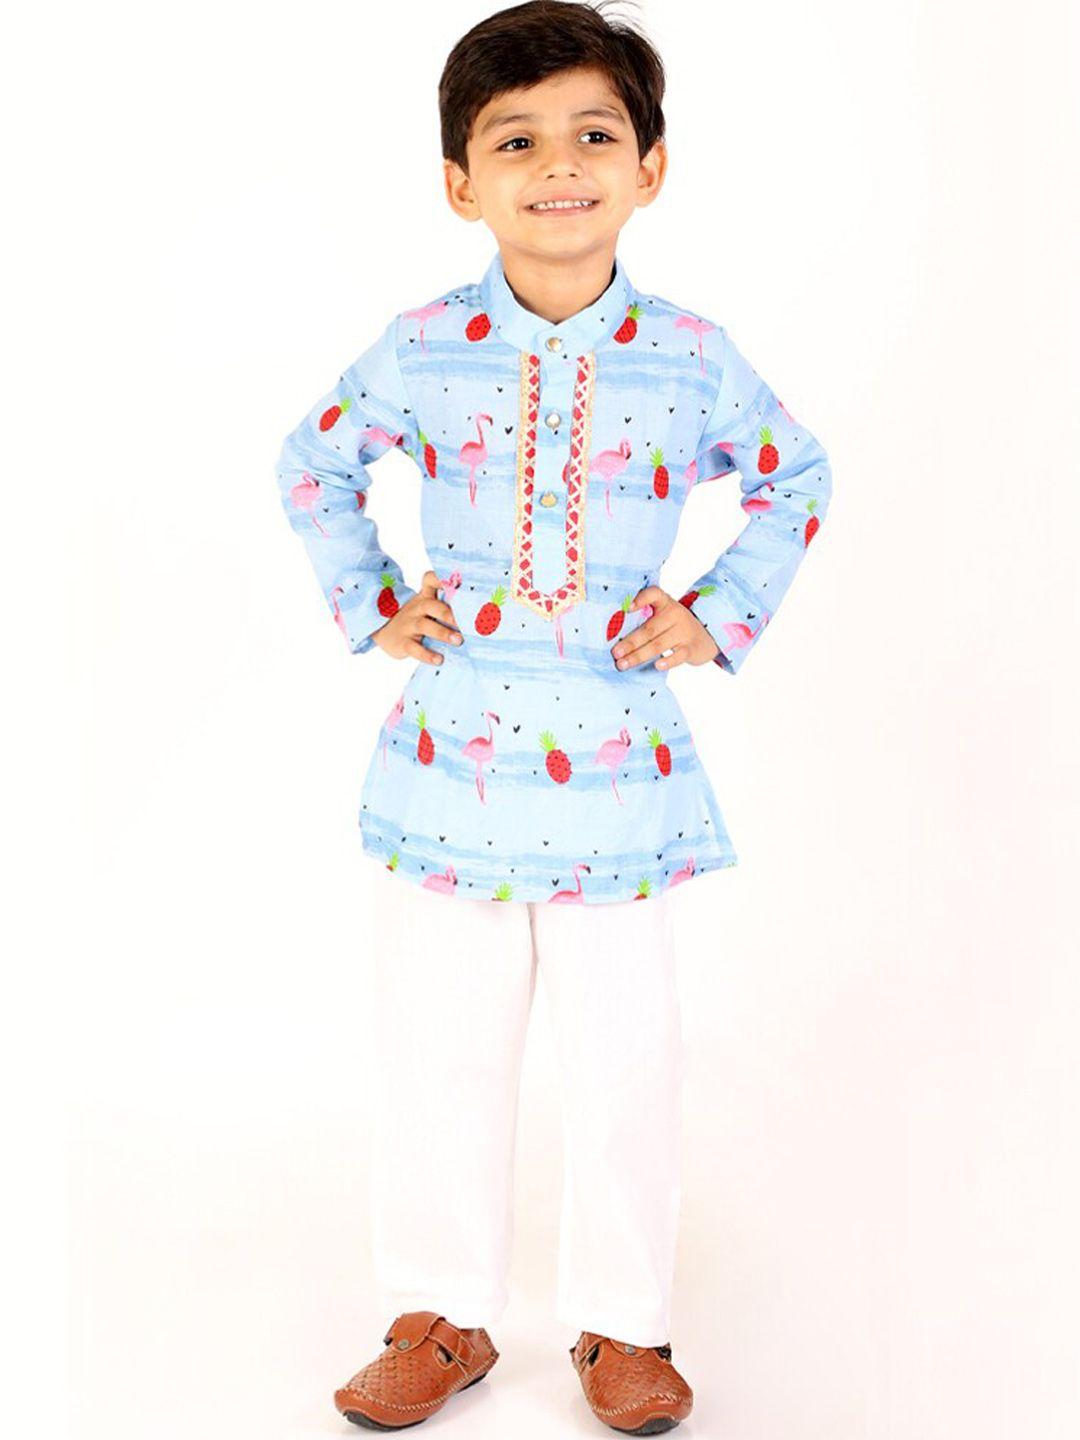 m'andy boys ethnic motifs printed pure cotton kurta with pyjamas